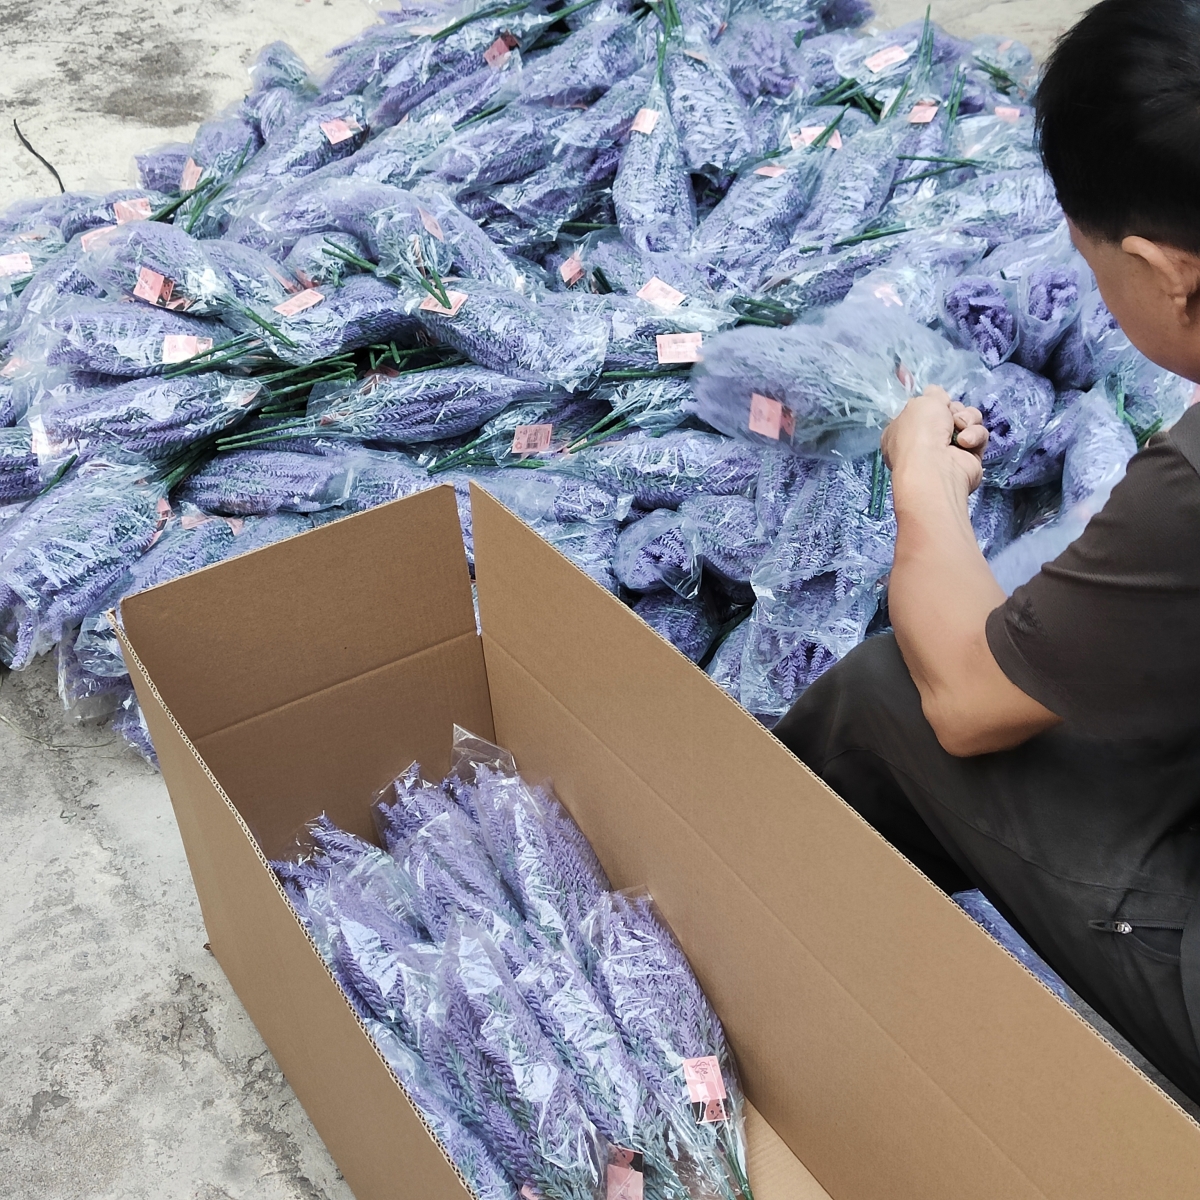 China kunstmatige lavendelbloemfabriek, plastic lavendelstengel, groothandel nepbloemenleverancier - Sunyfar kunstbloemen, Chinese fabriek, leverancier, fabrikant, groothandelaar